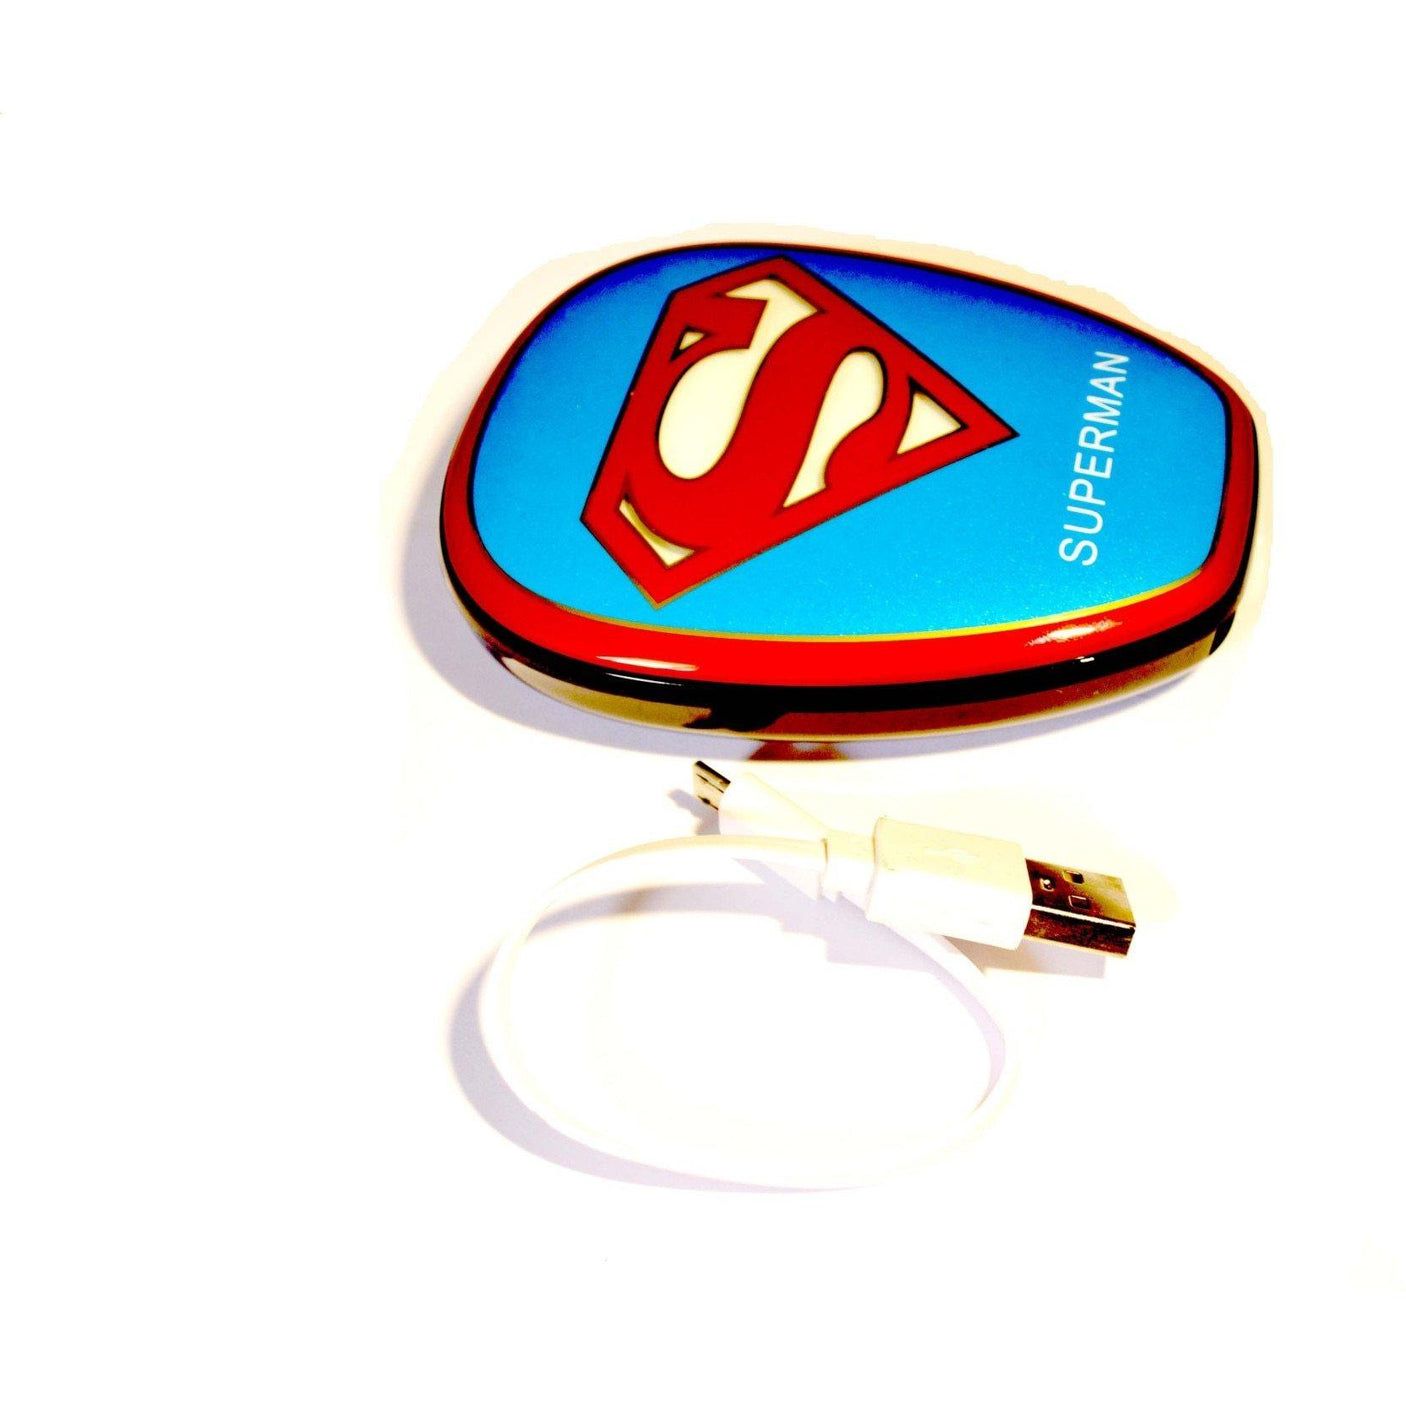 Baterie externa acumulator portabil Avengers, Superman de mare capacitate 12000 mAh, 1 x USB, pentru telefoane mobile, smartphone, tablete - pedavo